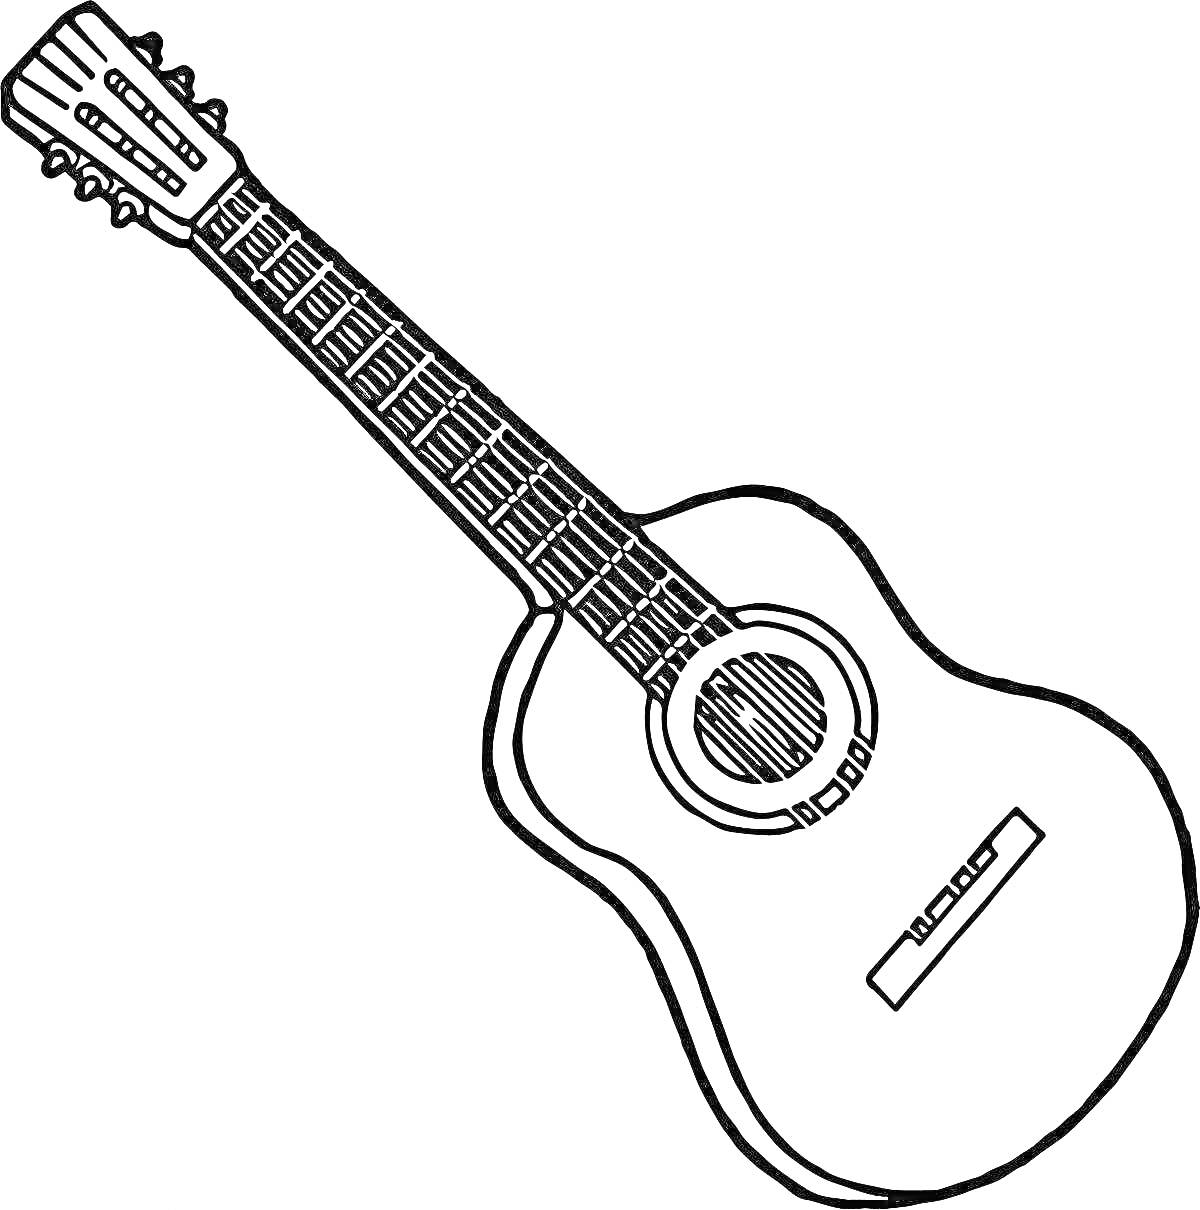 Раскраска Гитара с грифом, корпусом, резонаторным отверстием и струнами